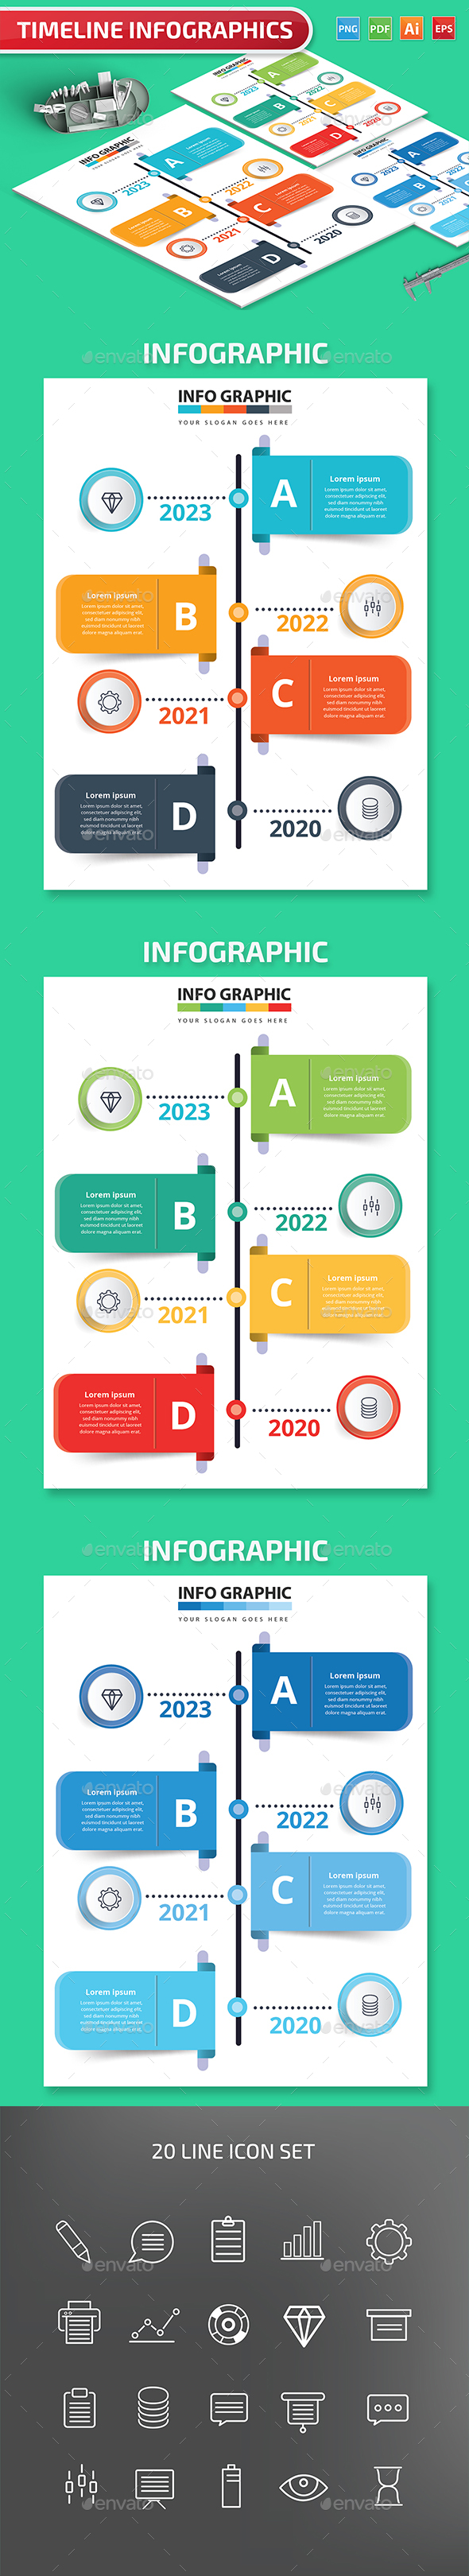 Timeline Infographics design